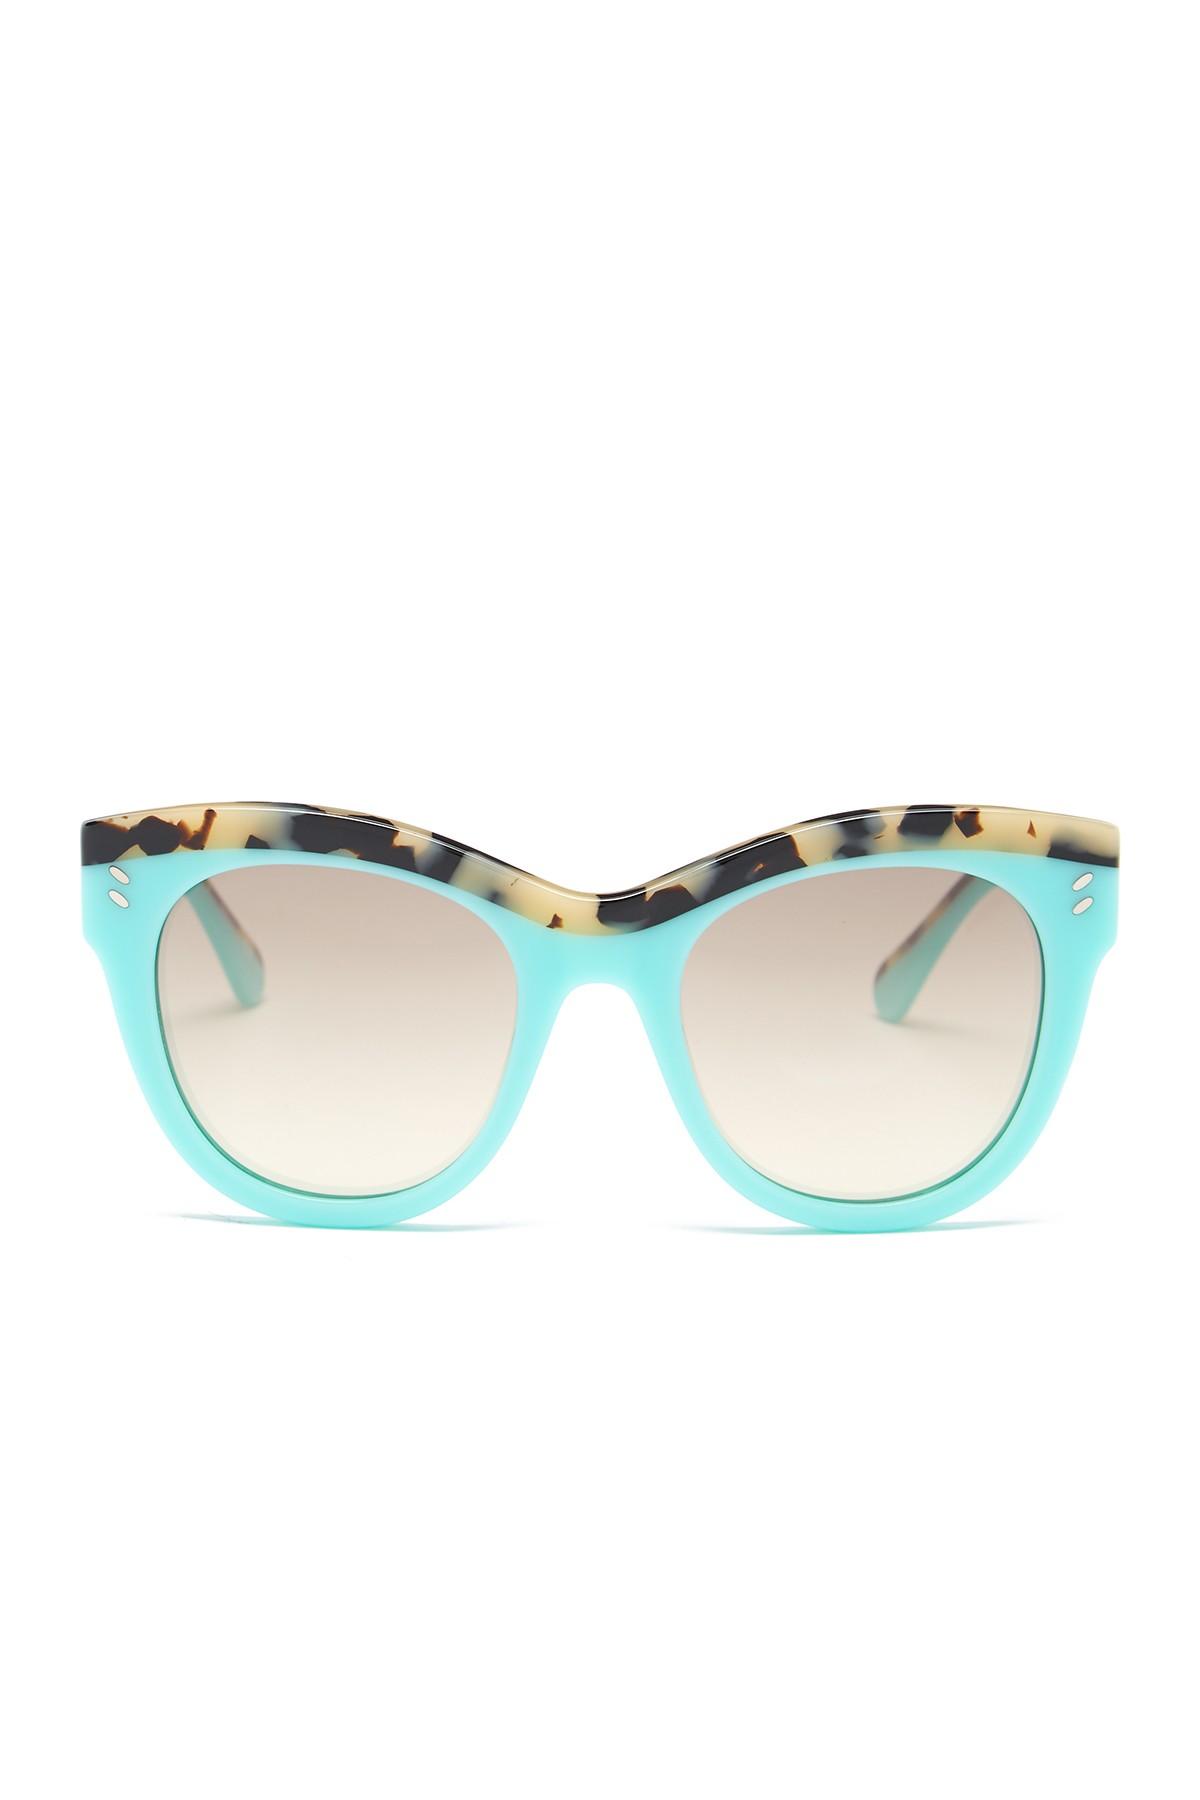 Stella mccartney Women's Cat Eye Sunglasses in Blue | Lyst